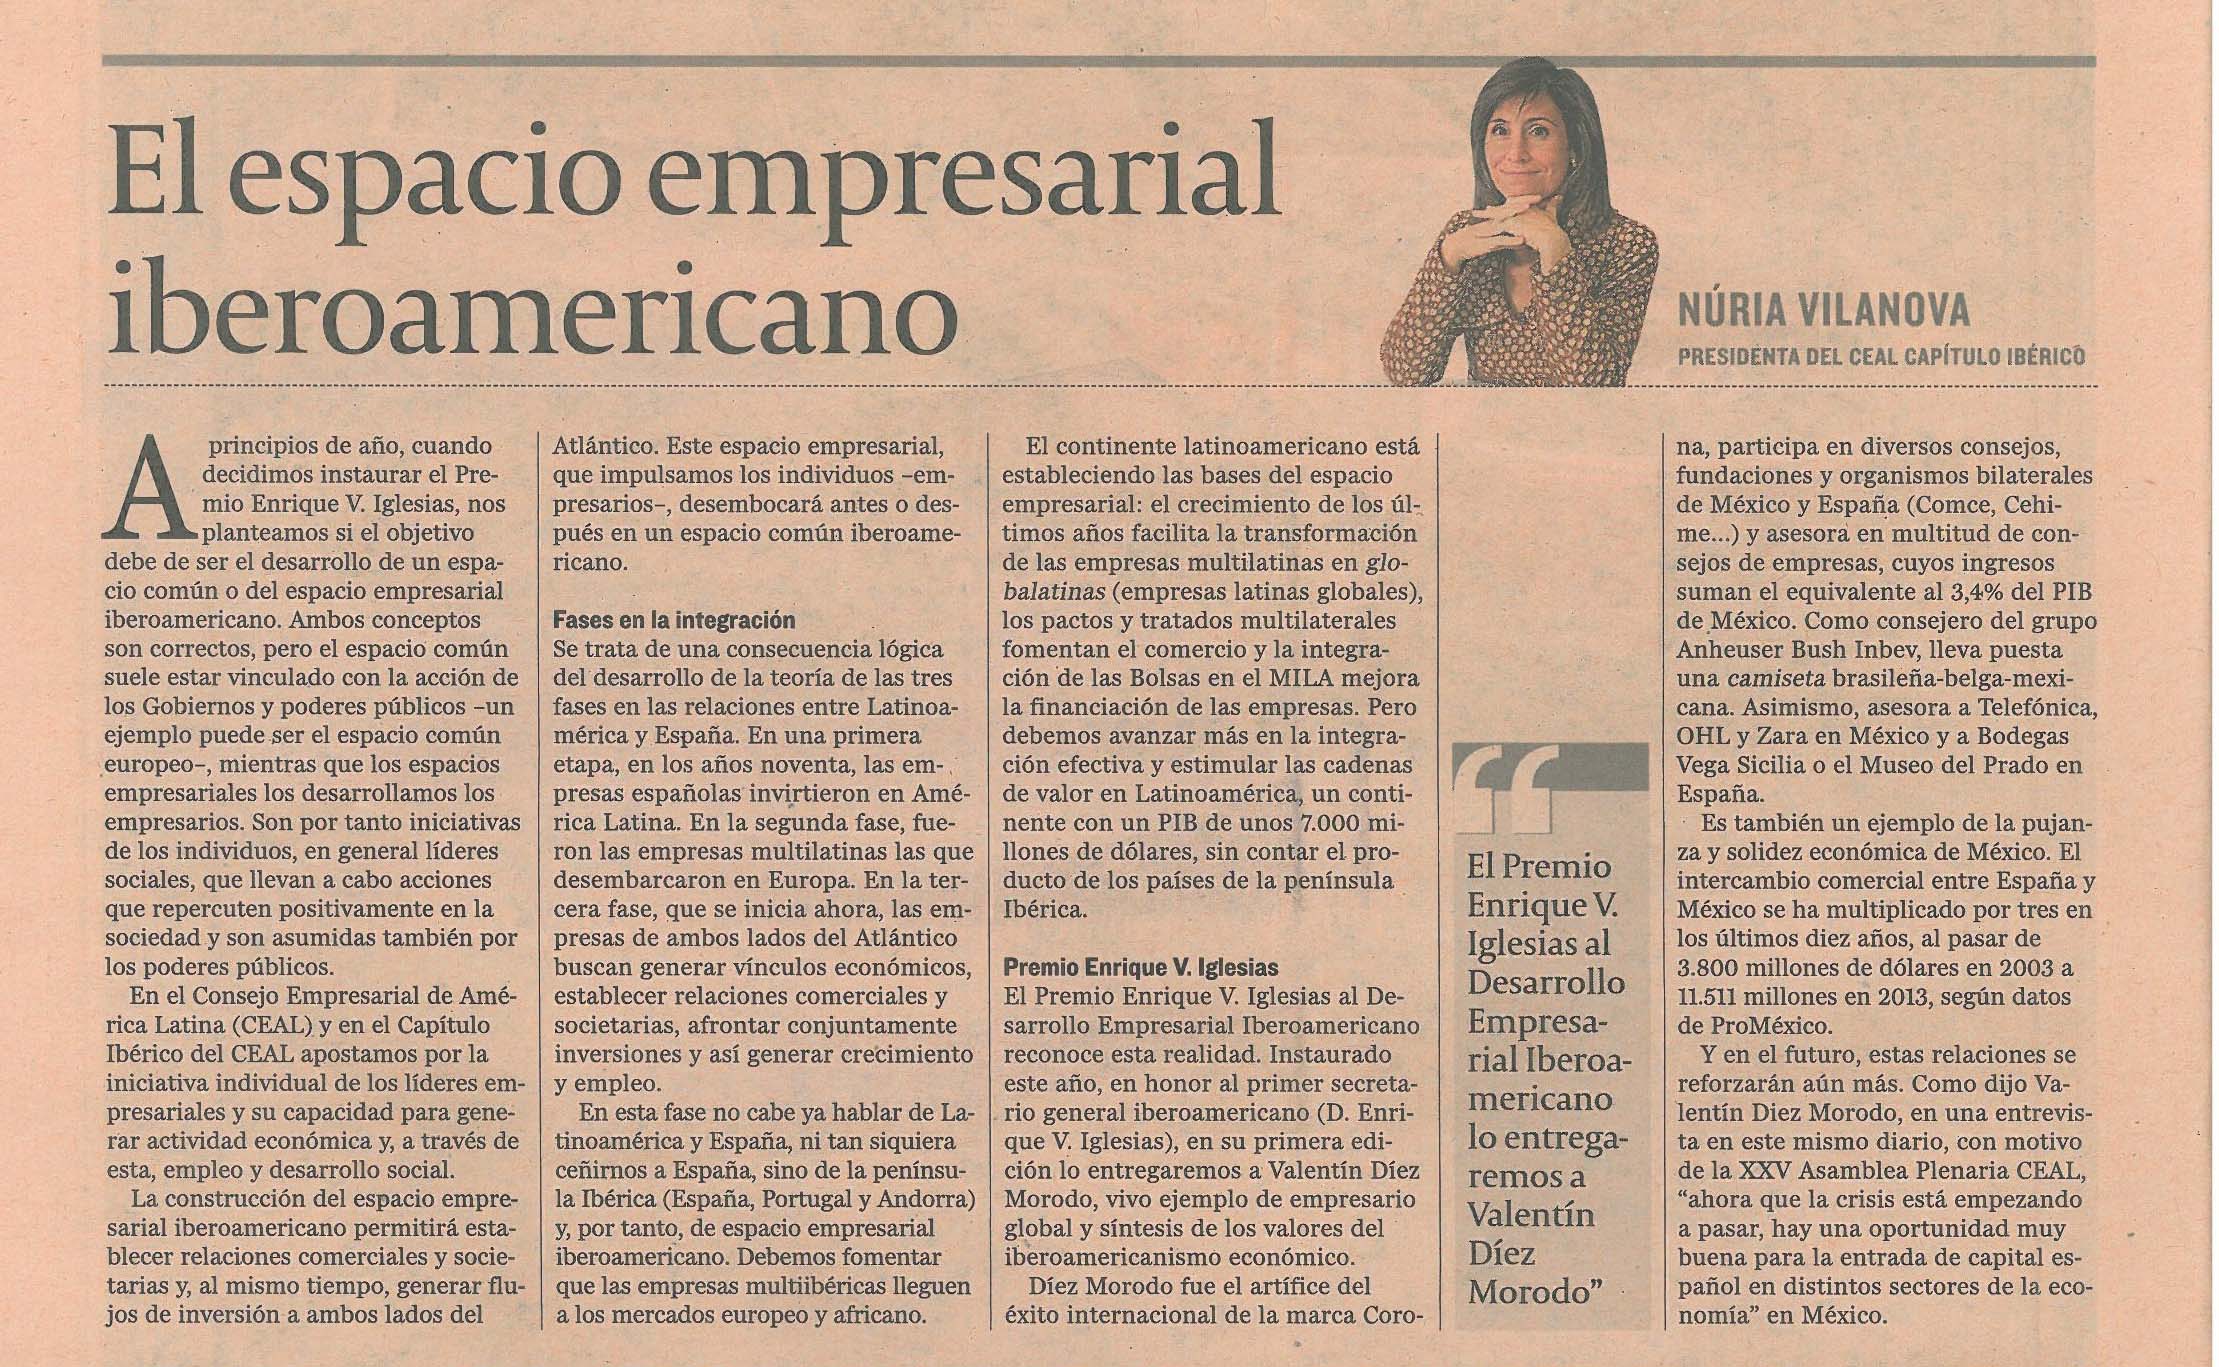 El Espacio Empresarial Iberoamericano y el premio Enrique V. Iglesias